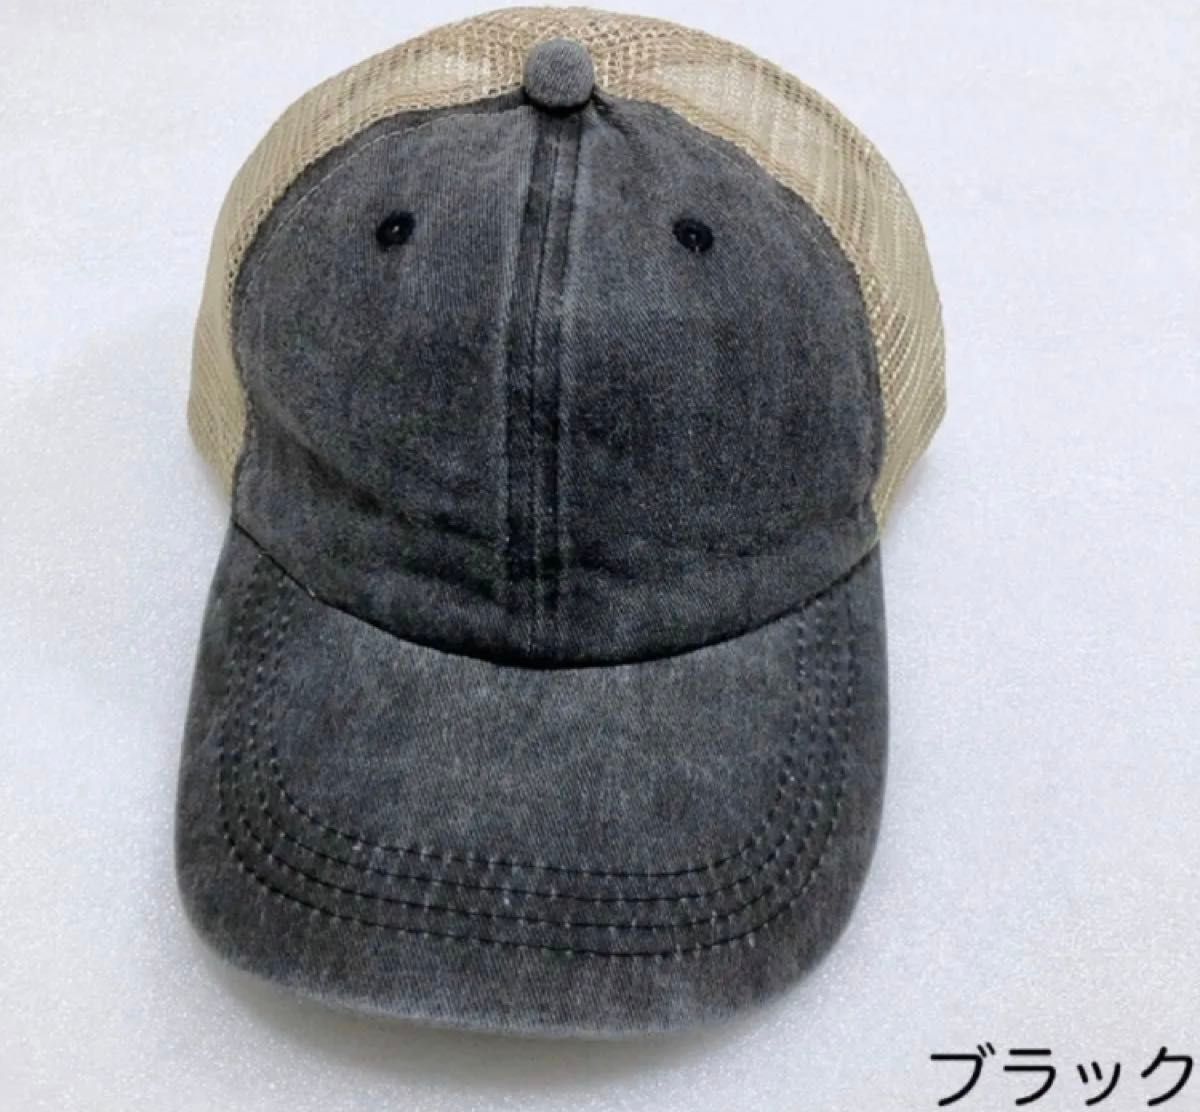 新品未使用 メンズメッシュキャップ 涼しい帽子 ウォッシュコットン  ヴィンテージ加工 男性用 つば付き 野球帽 黒  スポーツ